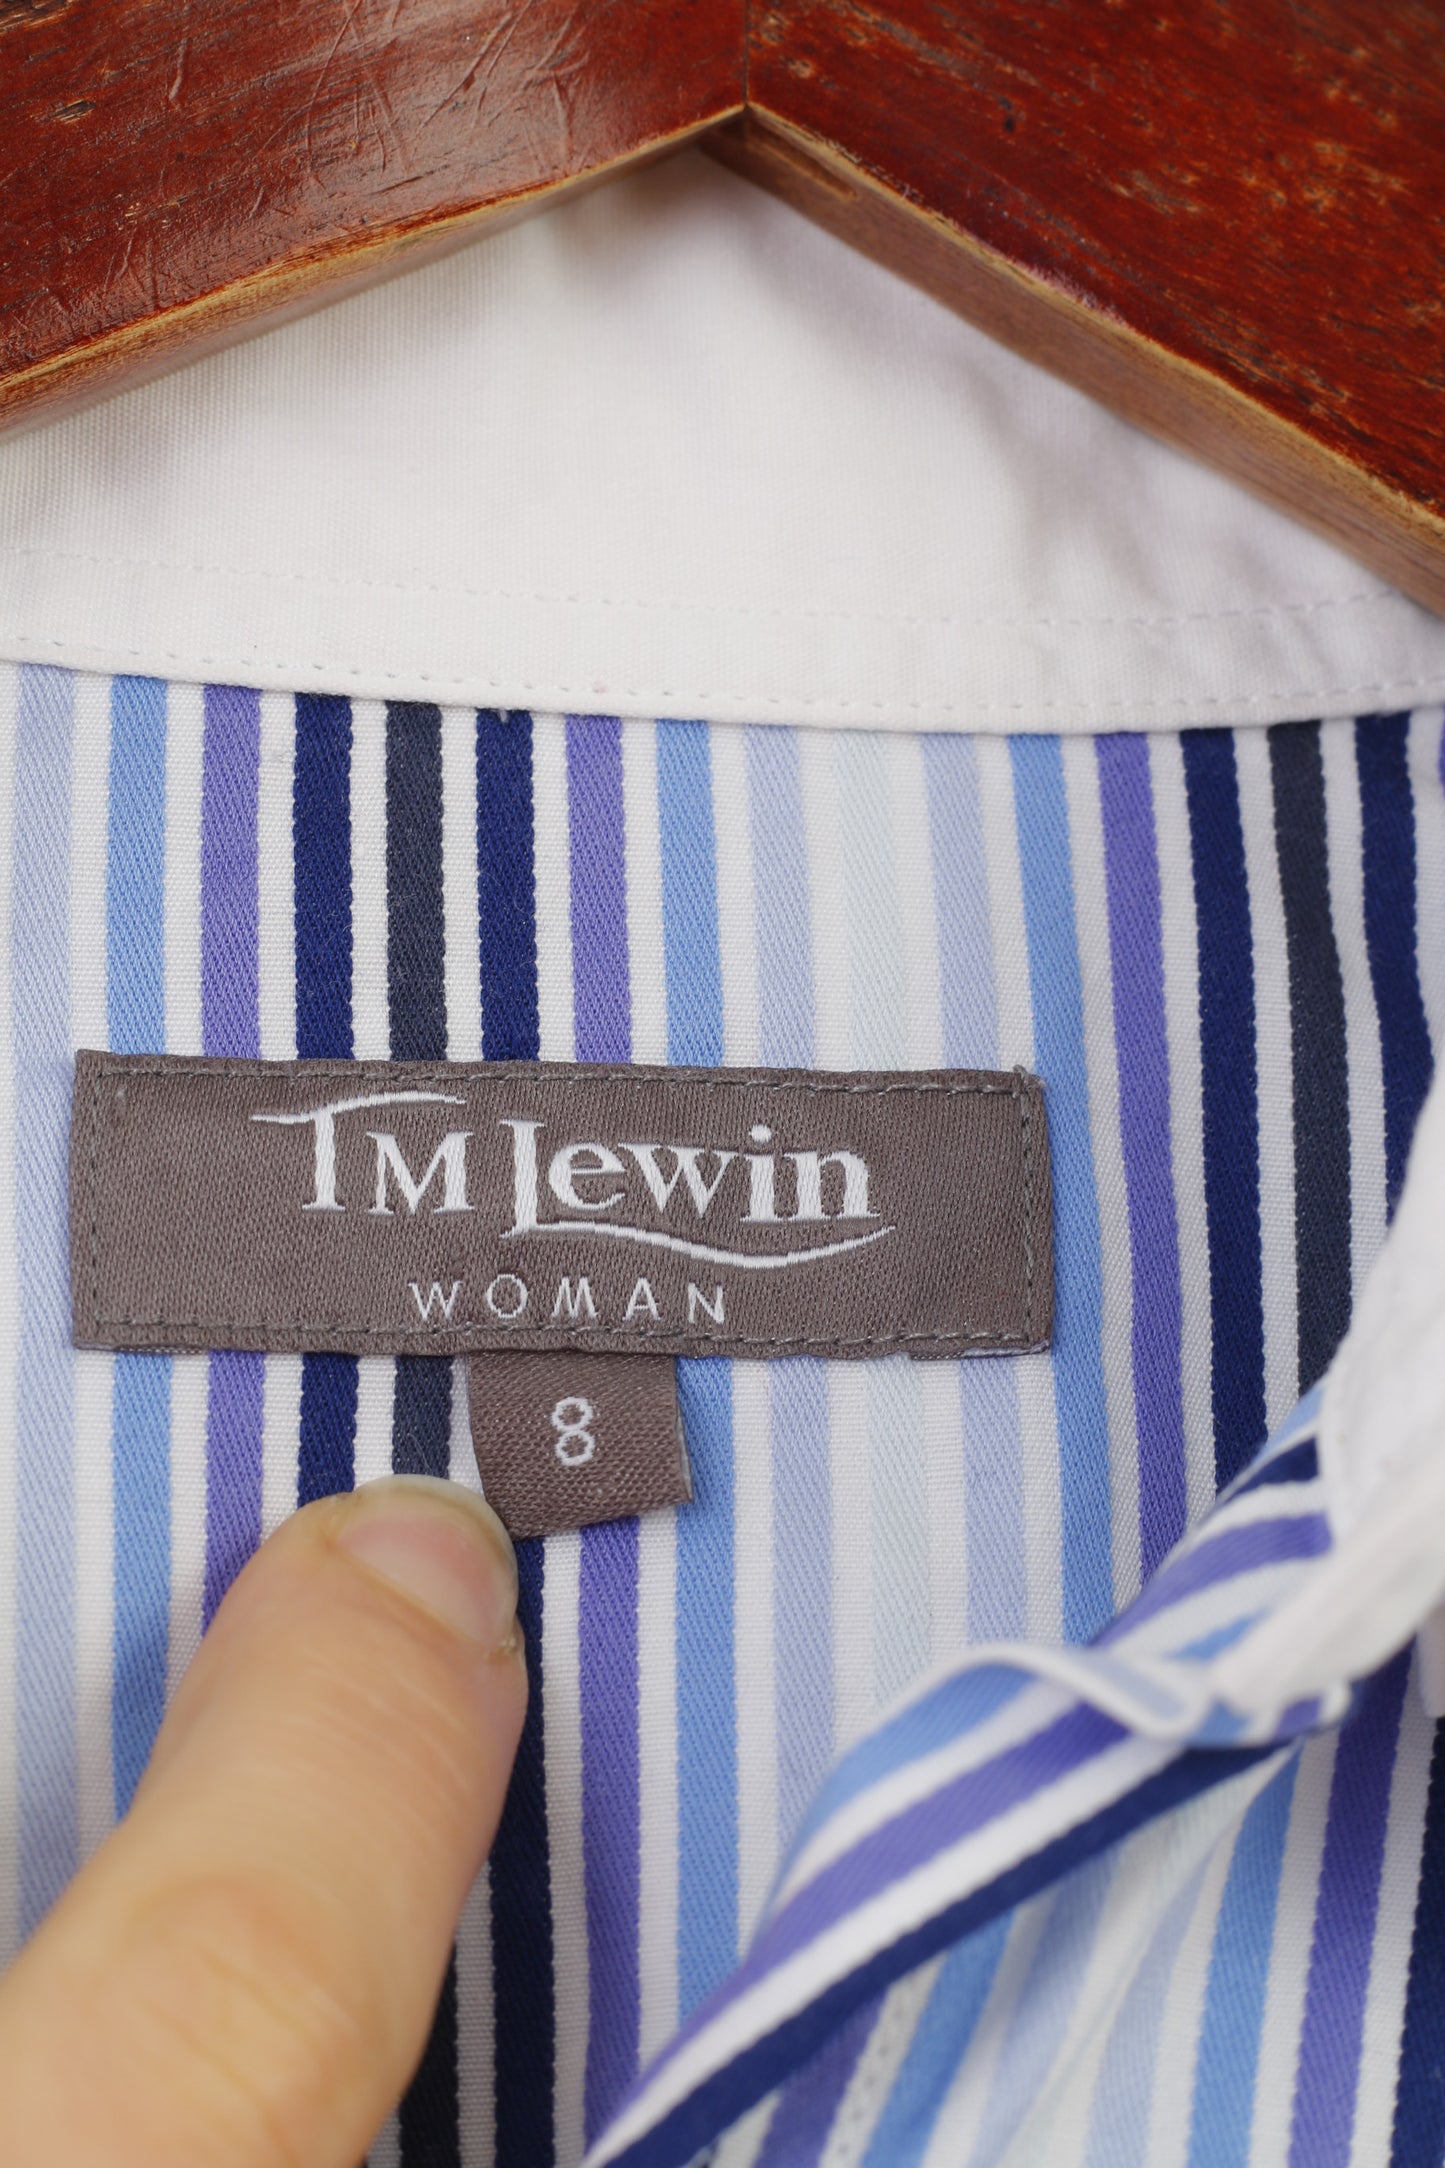 TM Lewin Donna 8 S Camicia casual a righe con bottoni e top a maniche lunghe